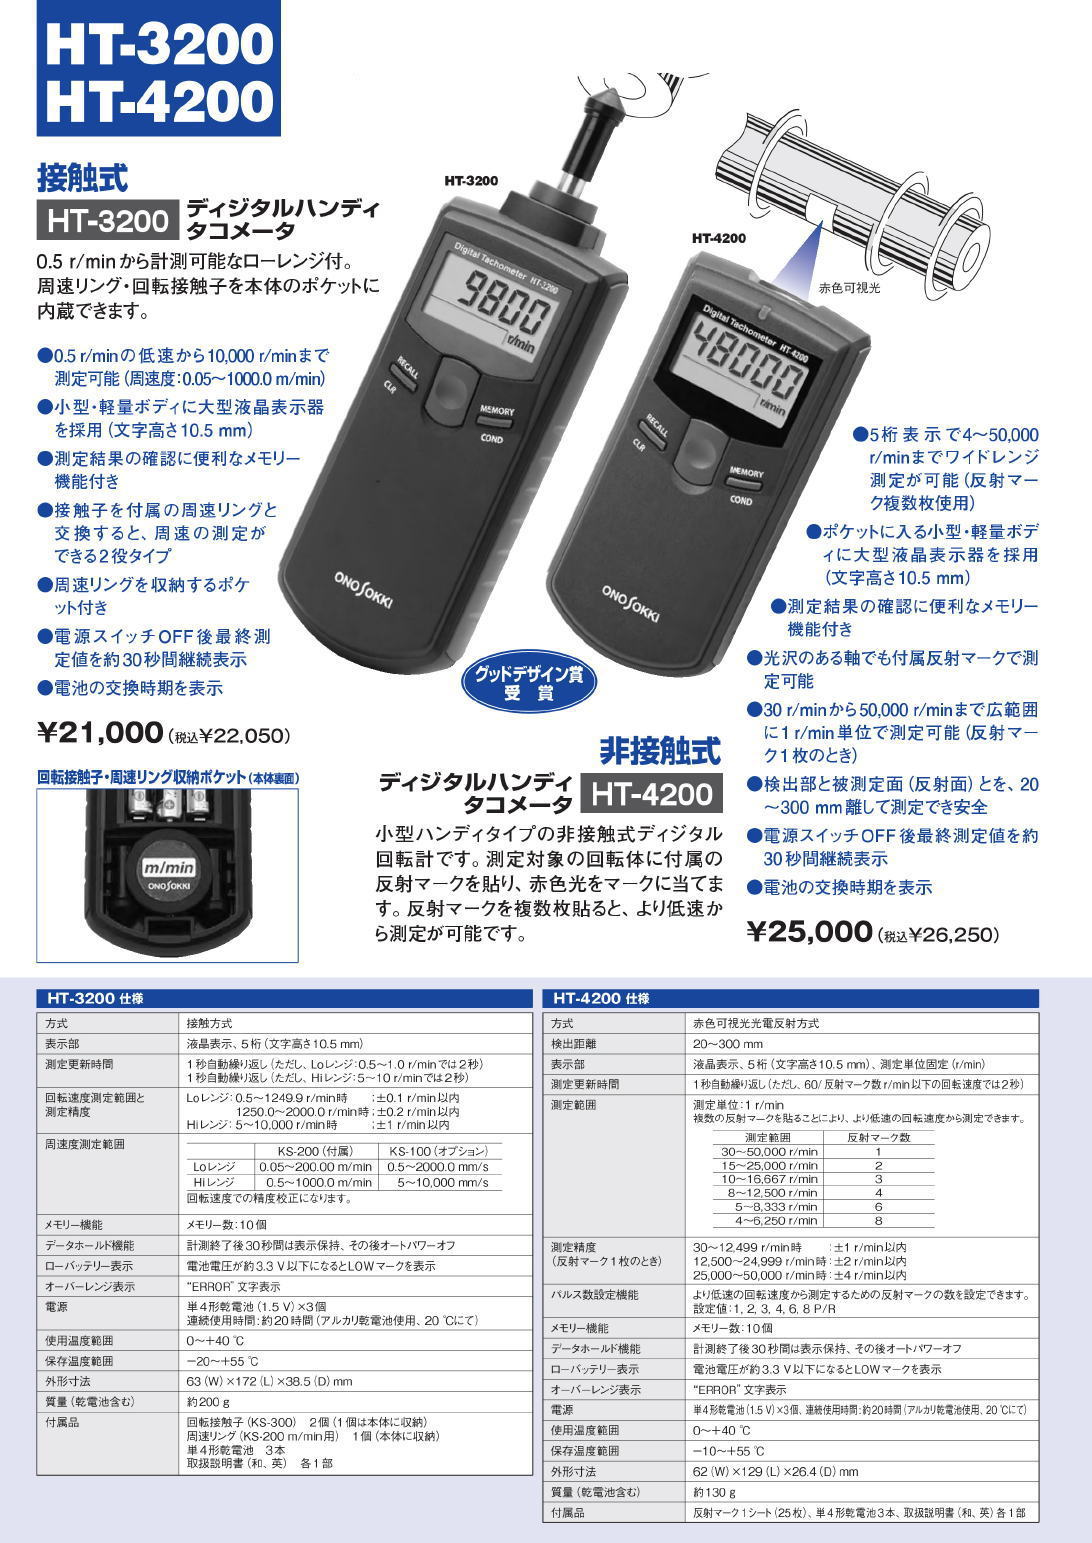 株式会社小野測器 デジタルハンディタコメータ HT-3200/HT-4200/HT-5500